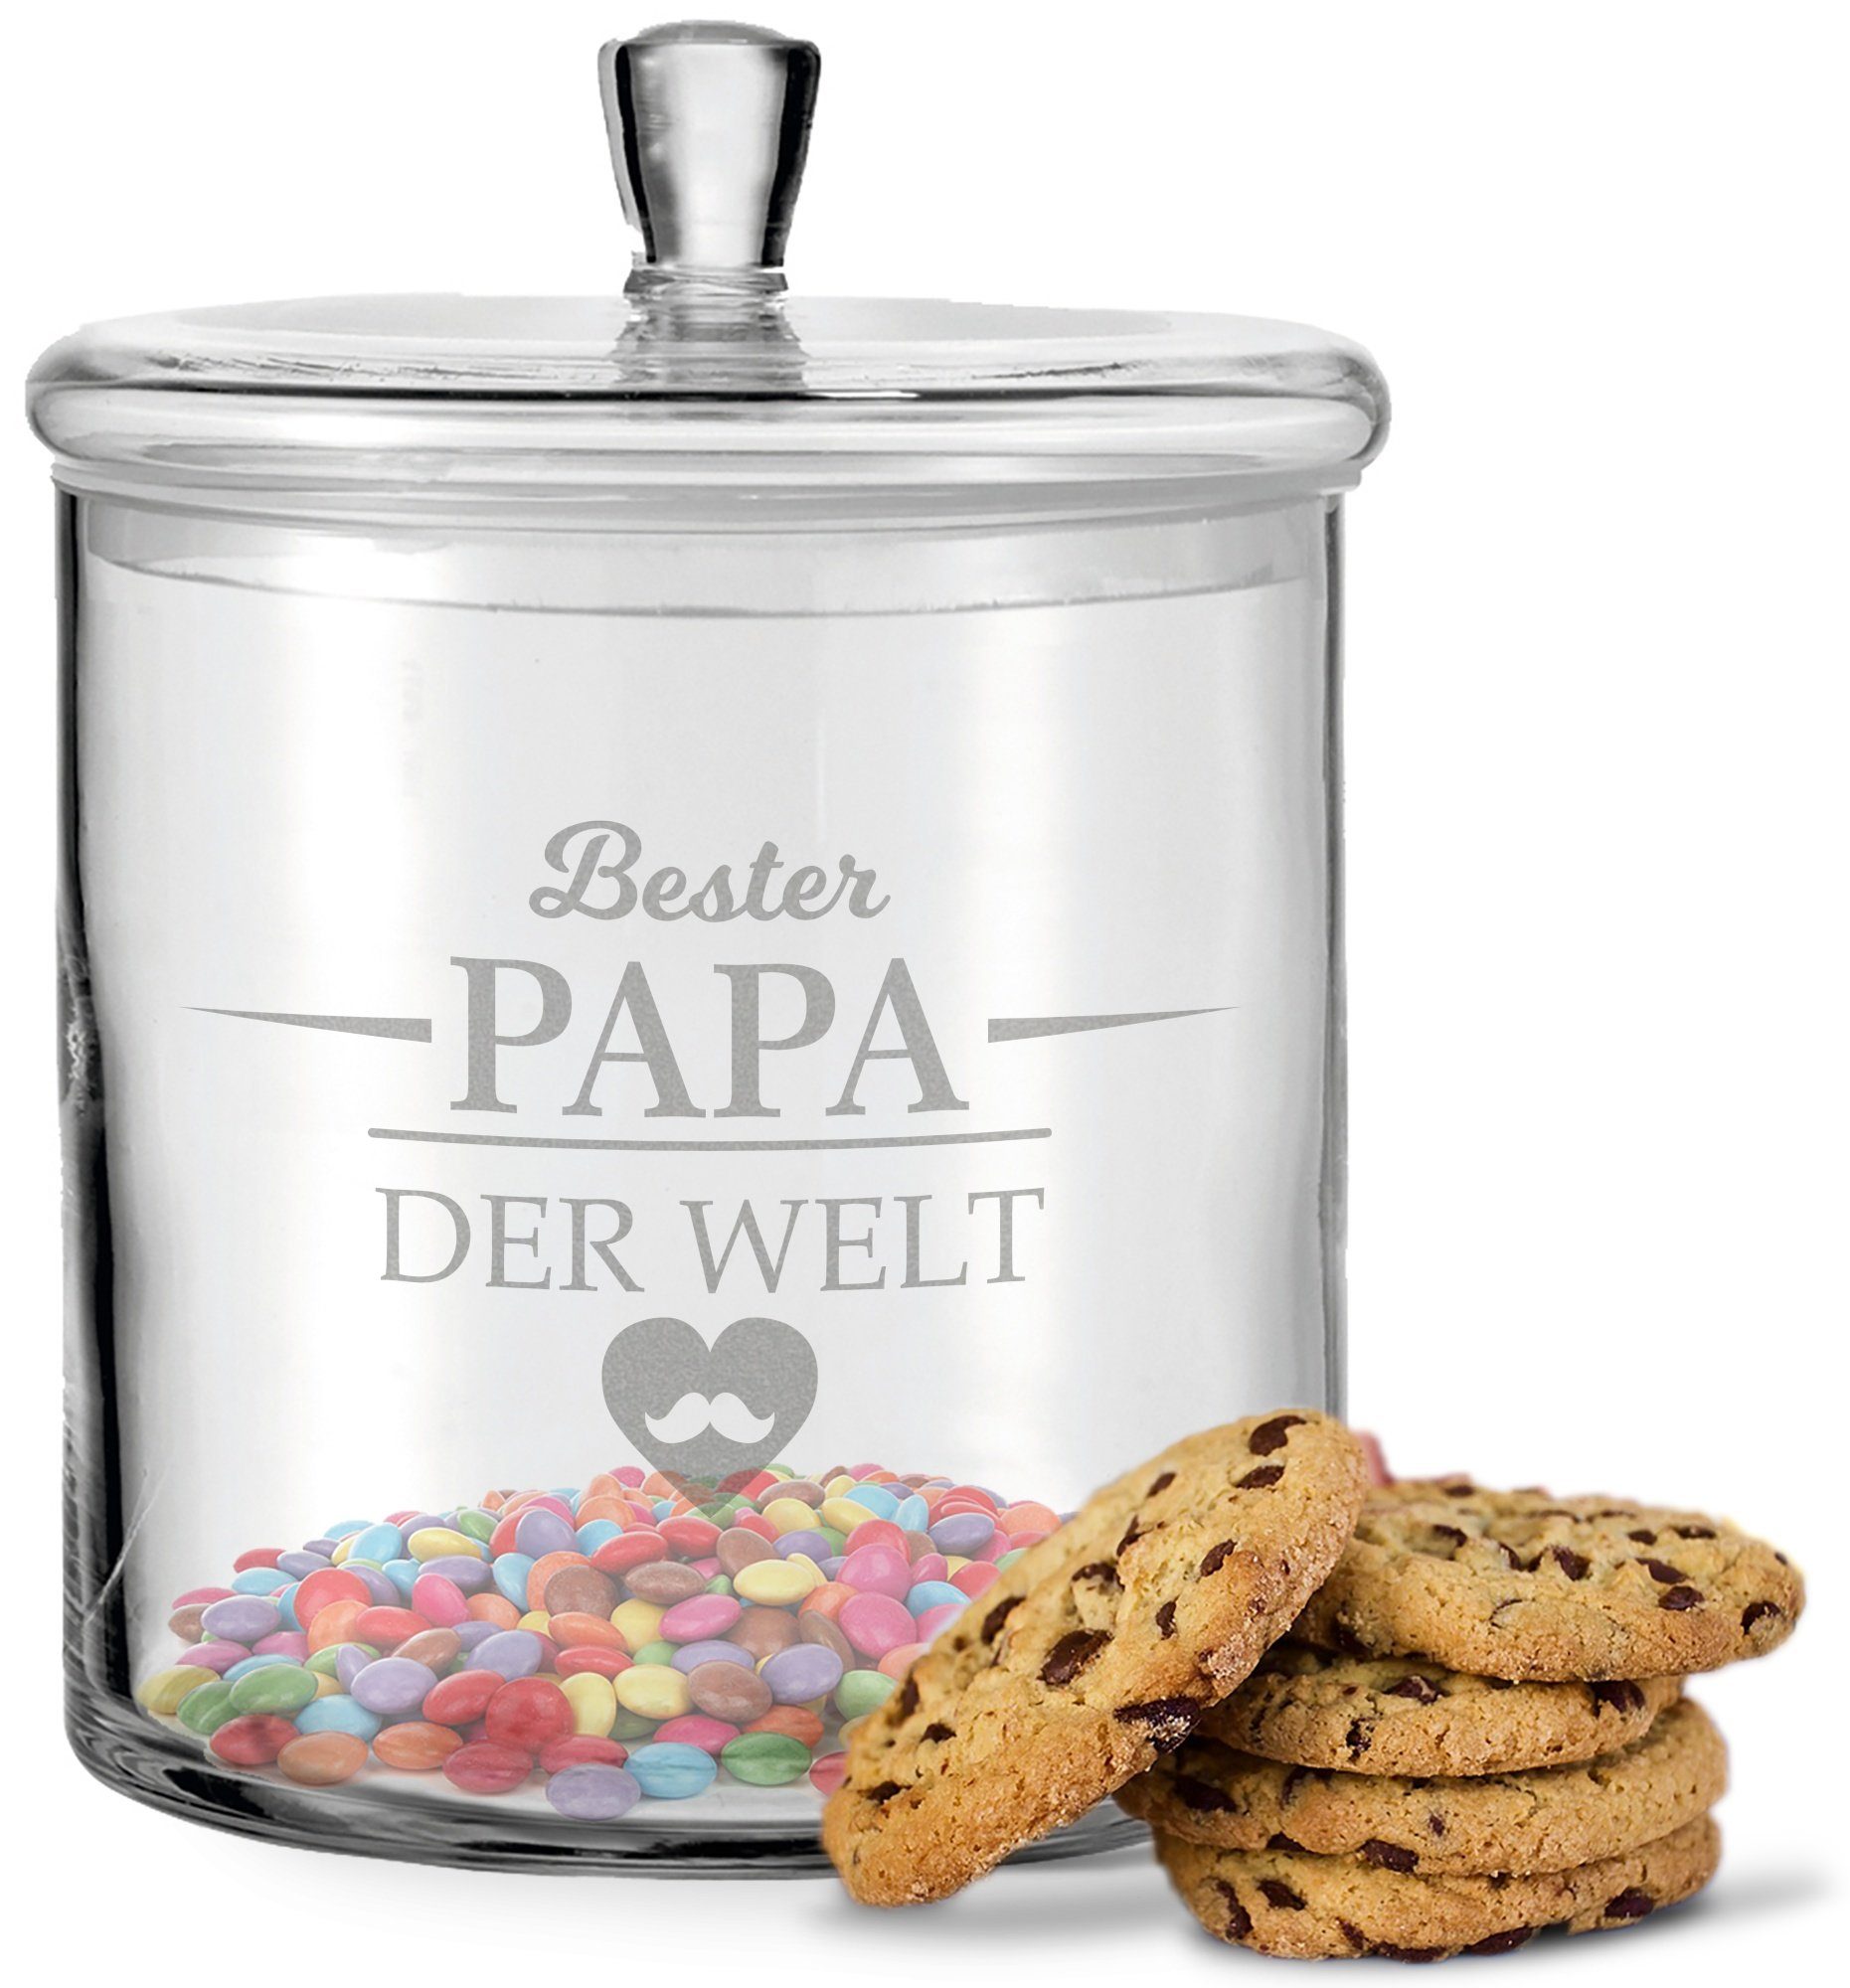 GRAVURZEILE Keksdose mit Gravur - Bester Papa der Welt - Keksdose mit Deckel, Glas, Handgefertigte Glasdose mit Deckel für Papa zum Vatertag